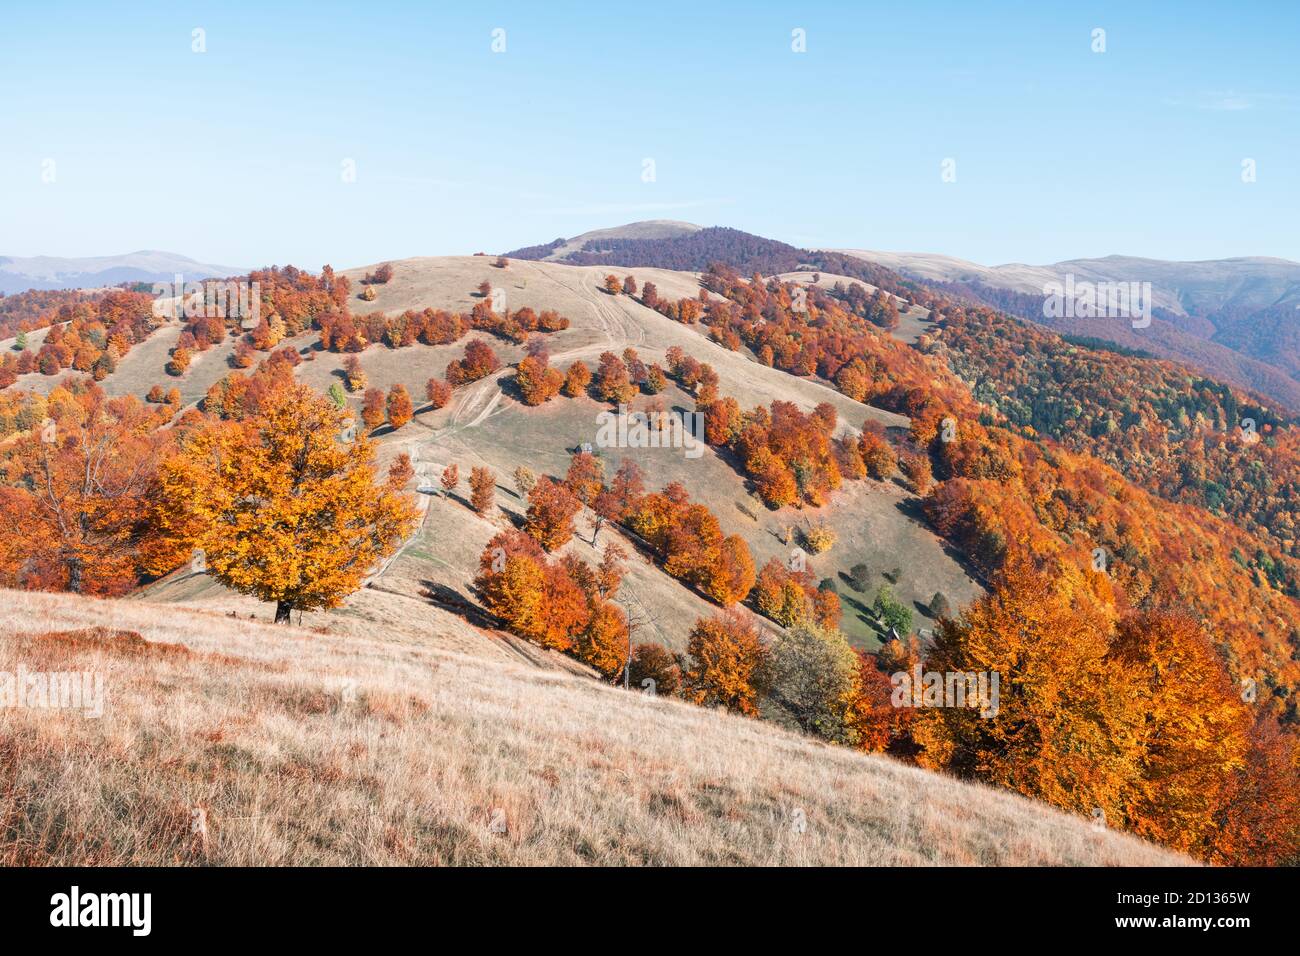 Pintoresco otoño montañas con bosque de hayas rojas en los Cárpatos, Ucrania. Fotografía paisajística Foto de stock